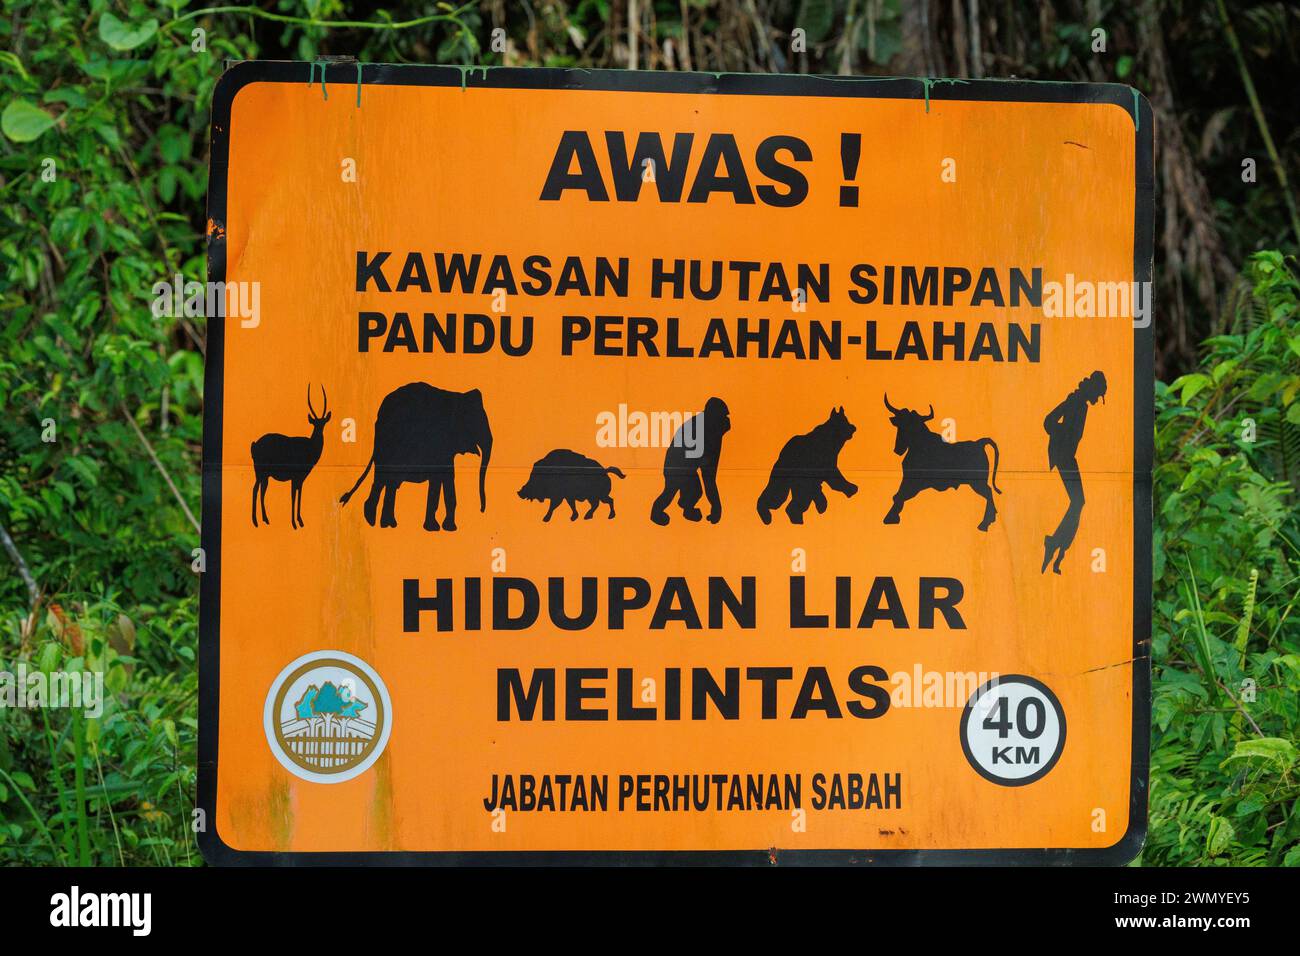 Malaisie, Bornéo, Sabah, réserve naturelle de Tabin, panneau de limitation de vitesse à l'entrée de la forêt, mesure de protection de la faune, avertissement sur la traversée de la faune. Notez Michael Jackson à droite Banque D'Images